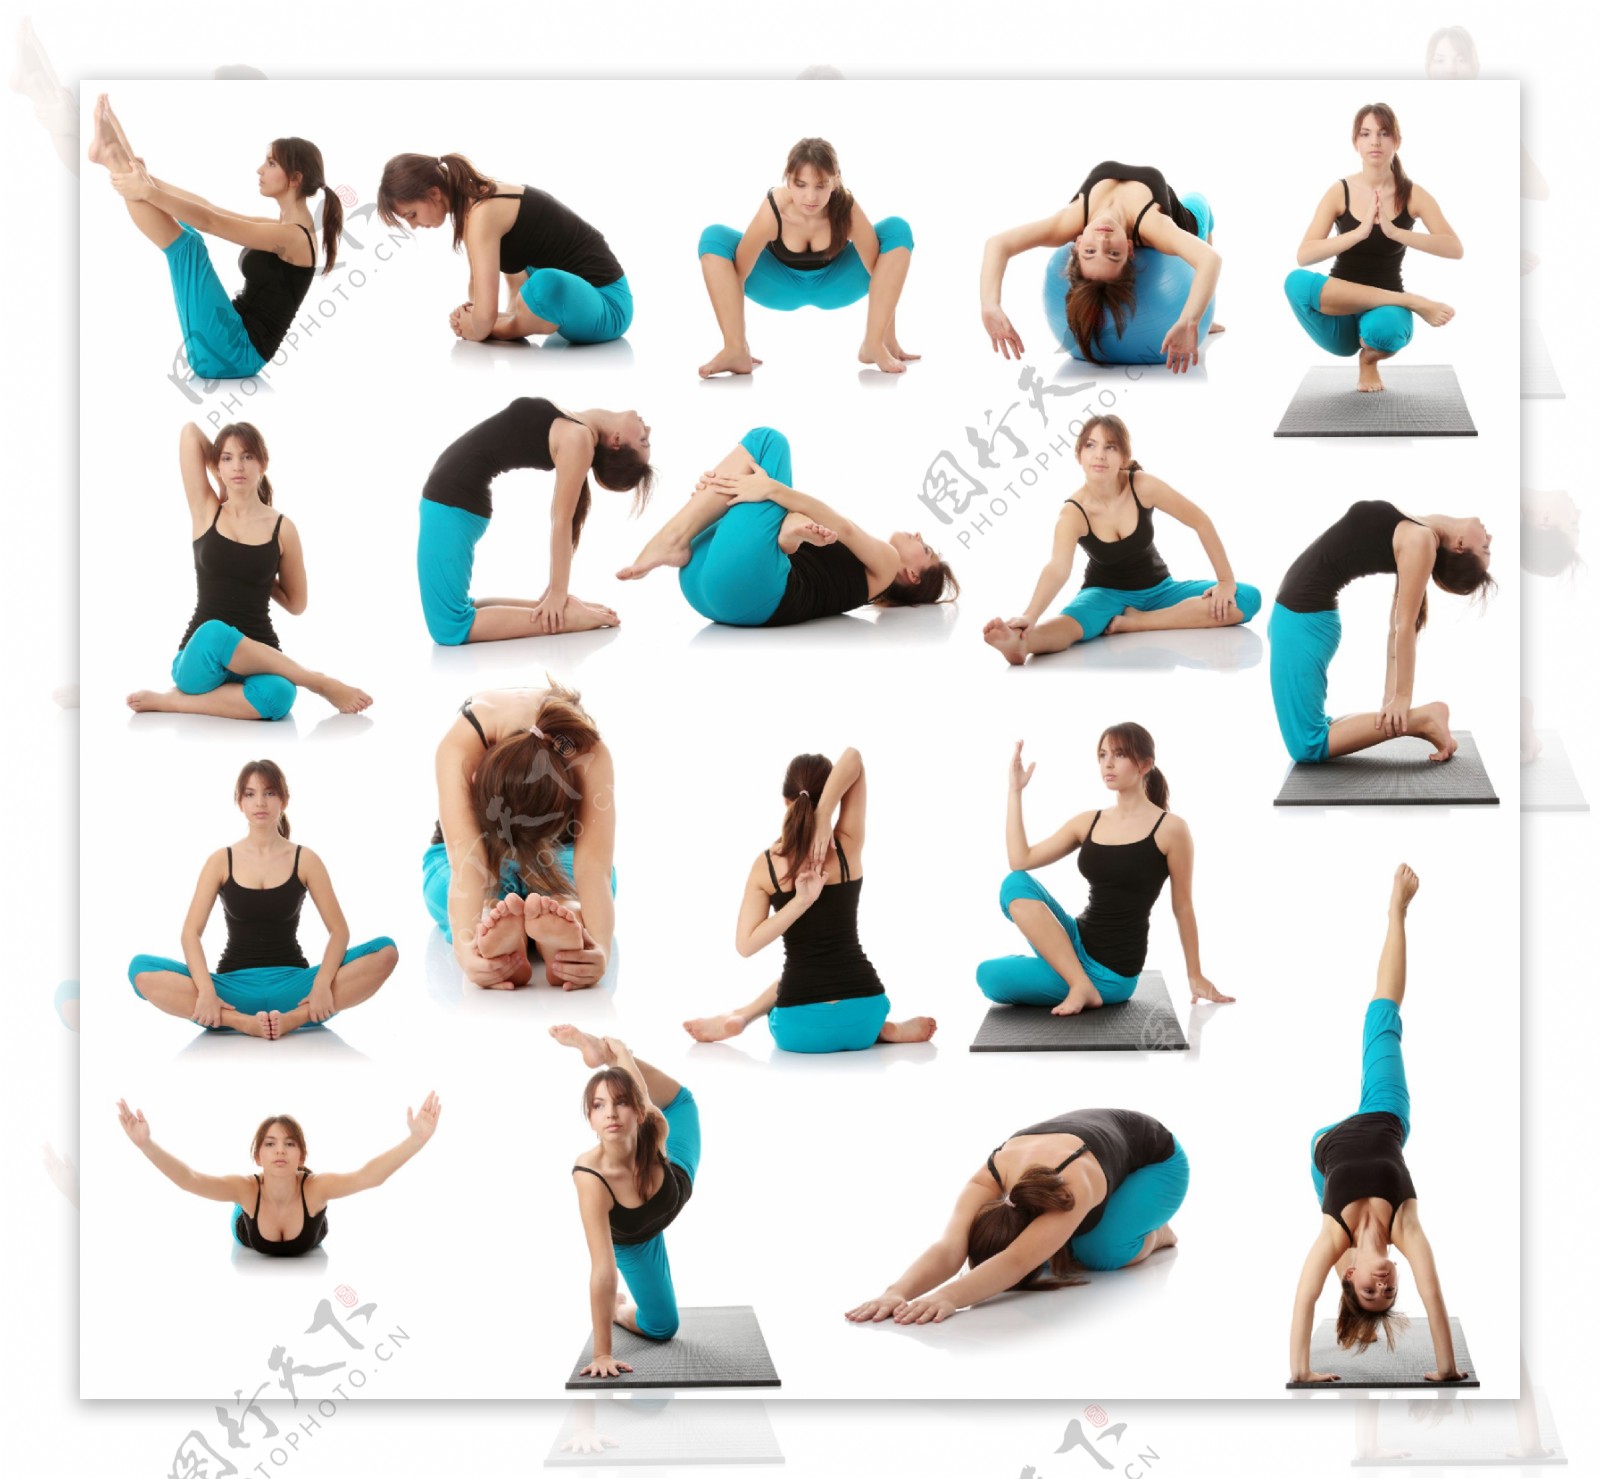 练瑜珈的健康美女图片